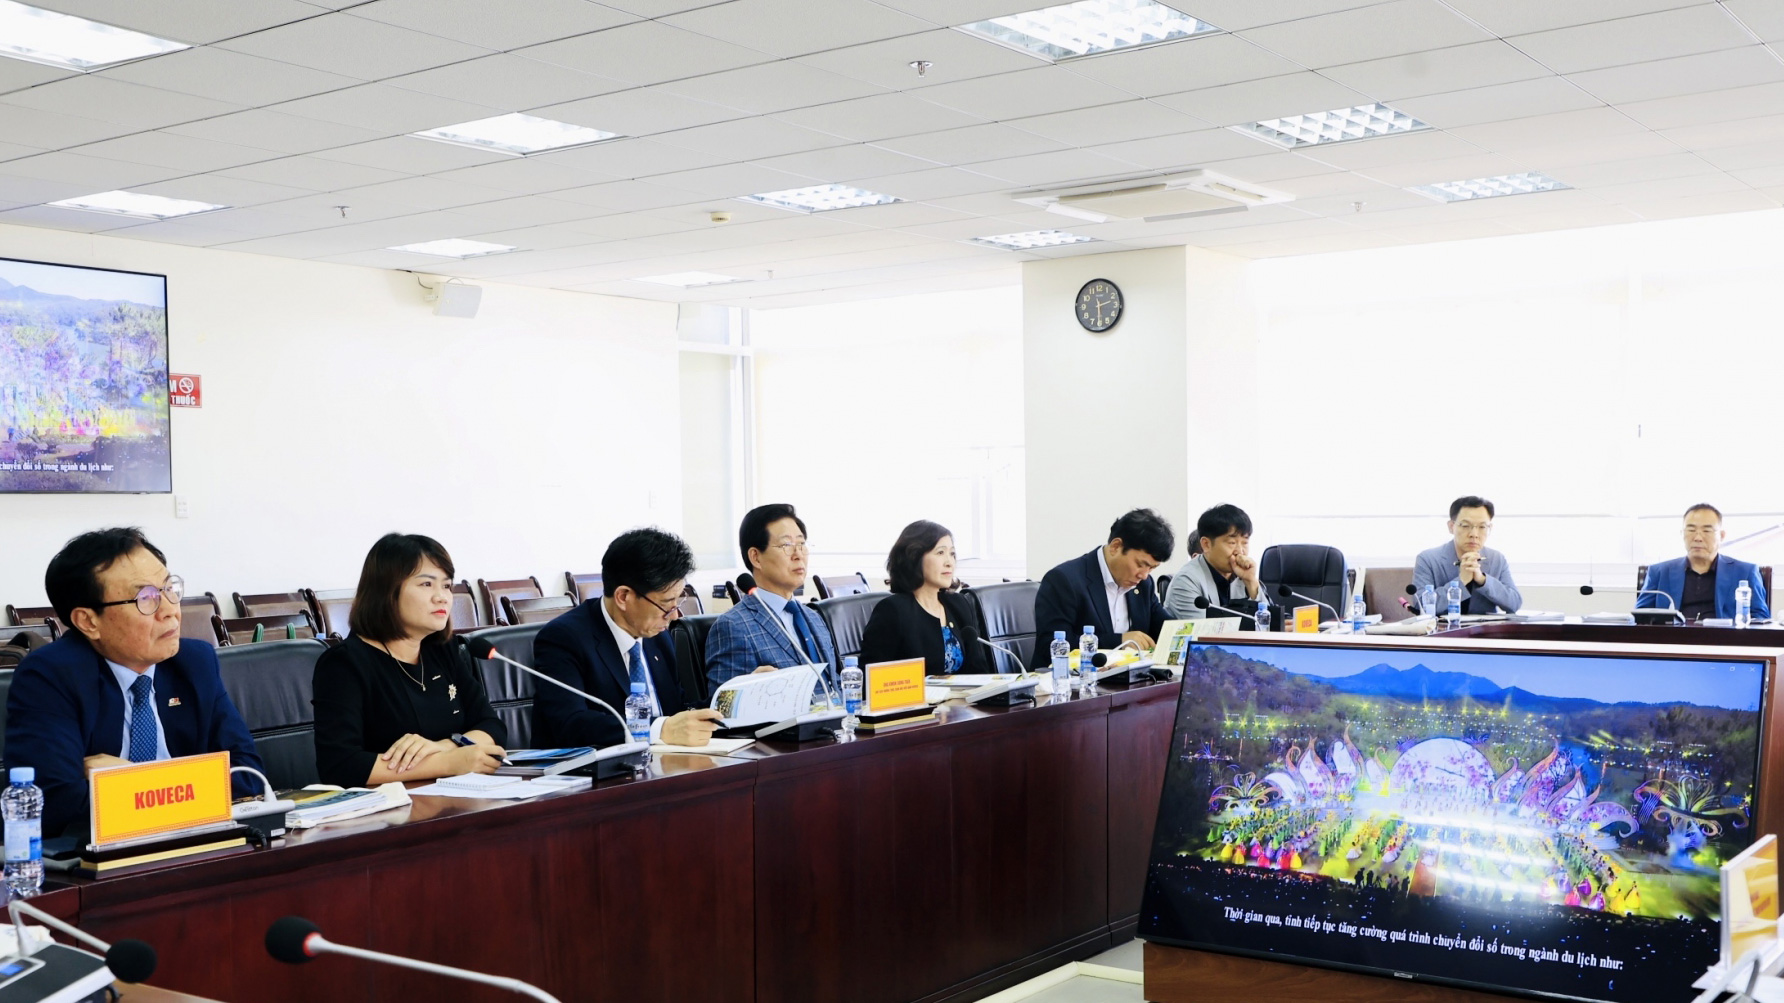 Đoàn công tác của Hiệp hội Kinh tế Văn hóa Hàn Quốc - Việt Nam làm việc tại Lâm Đồng